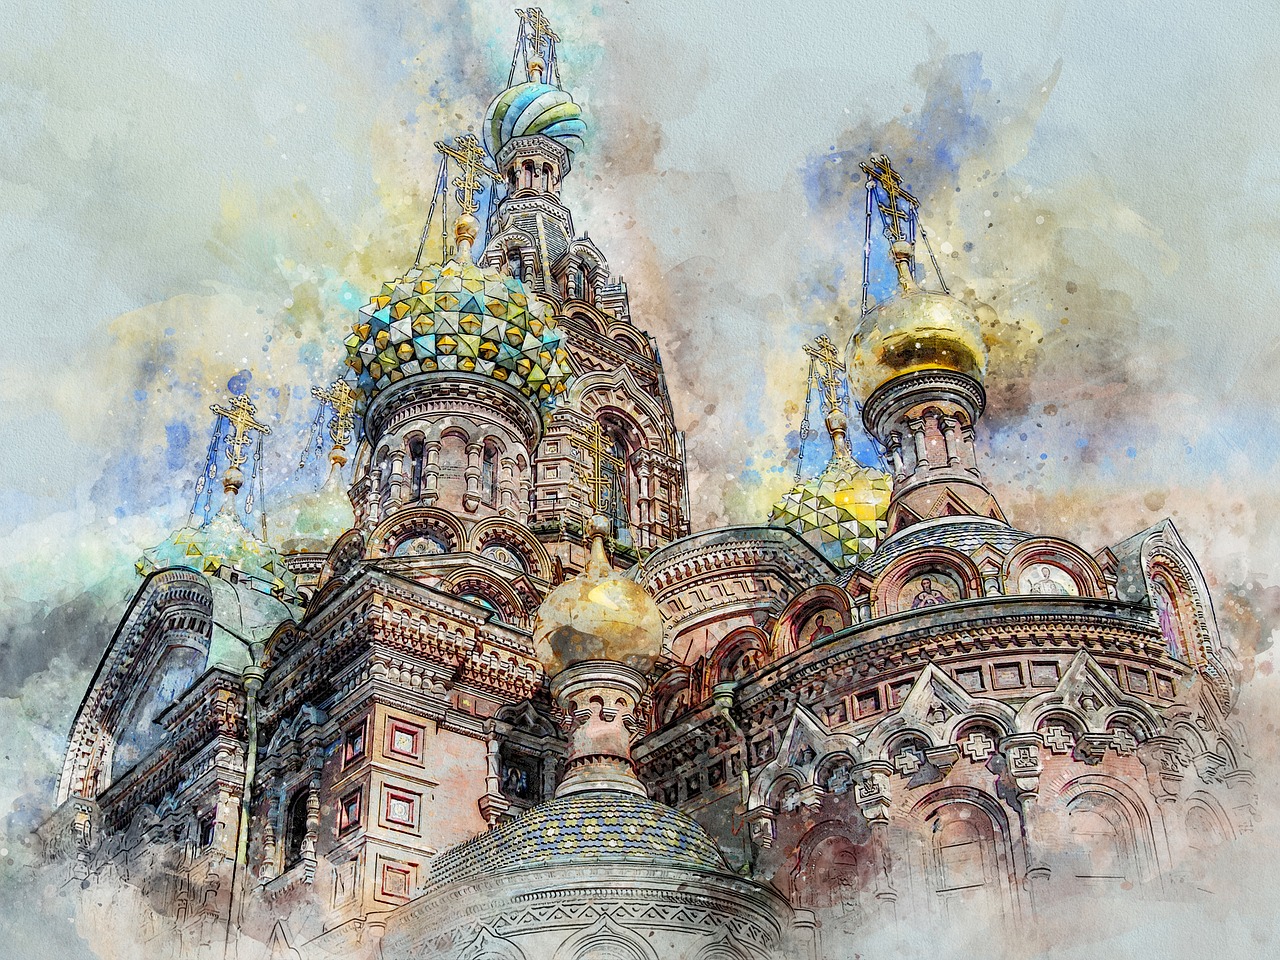 Pinturas rusas que son famosas en el mundo